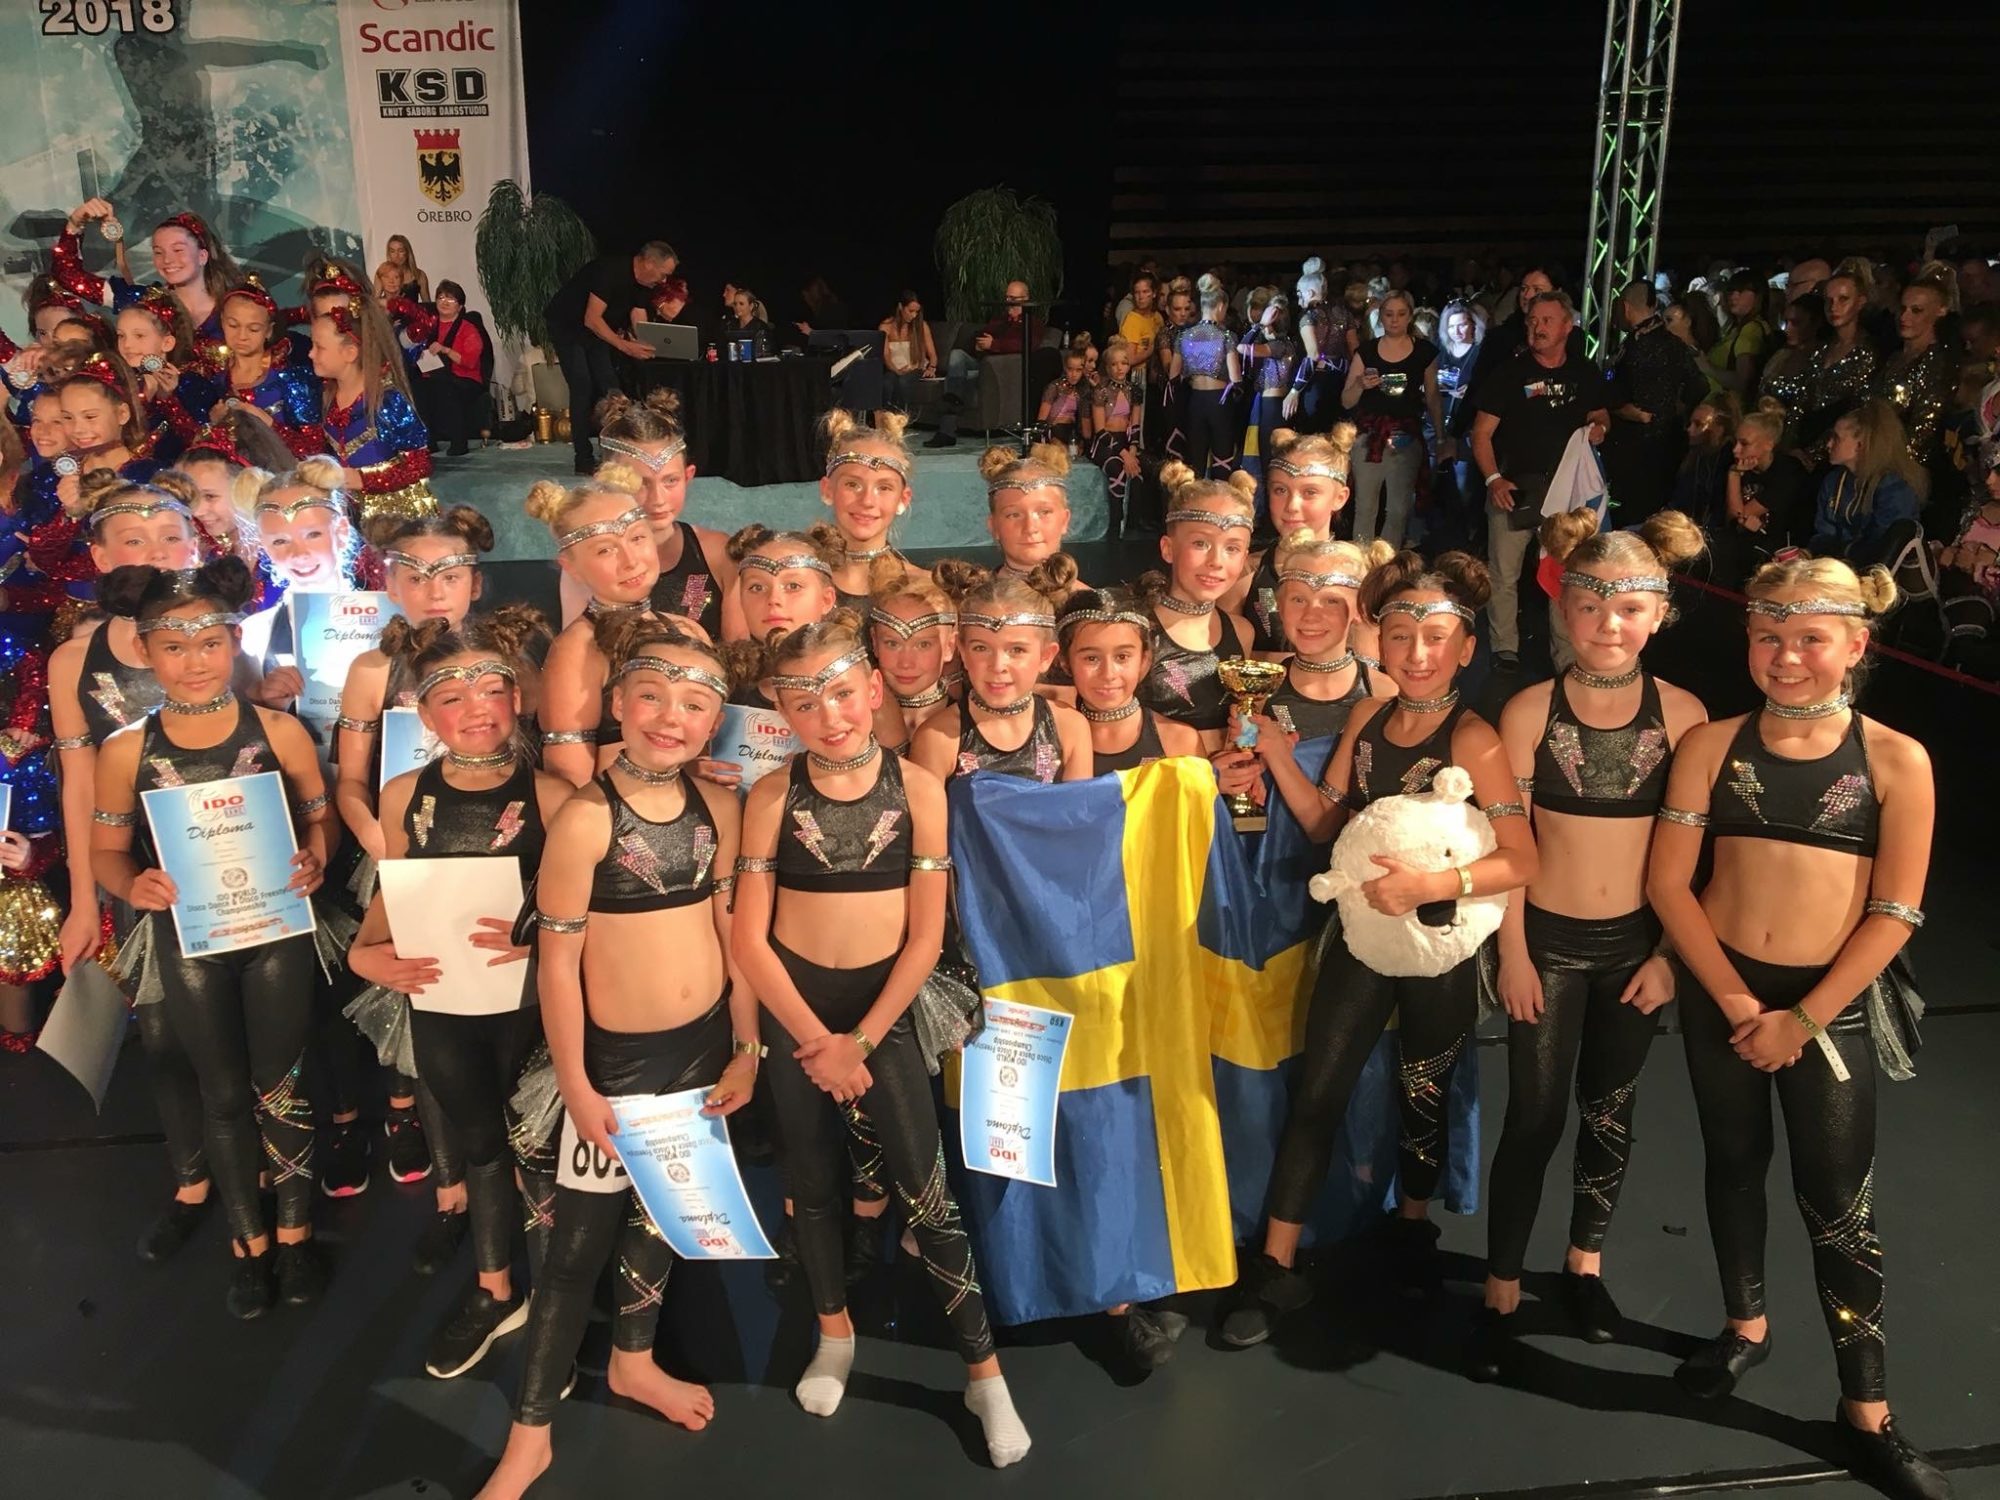 Tävlingsdansare med svensk flagga och diplom